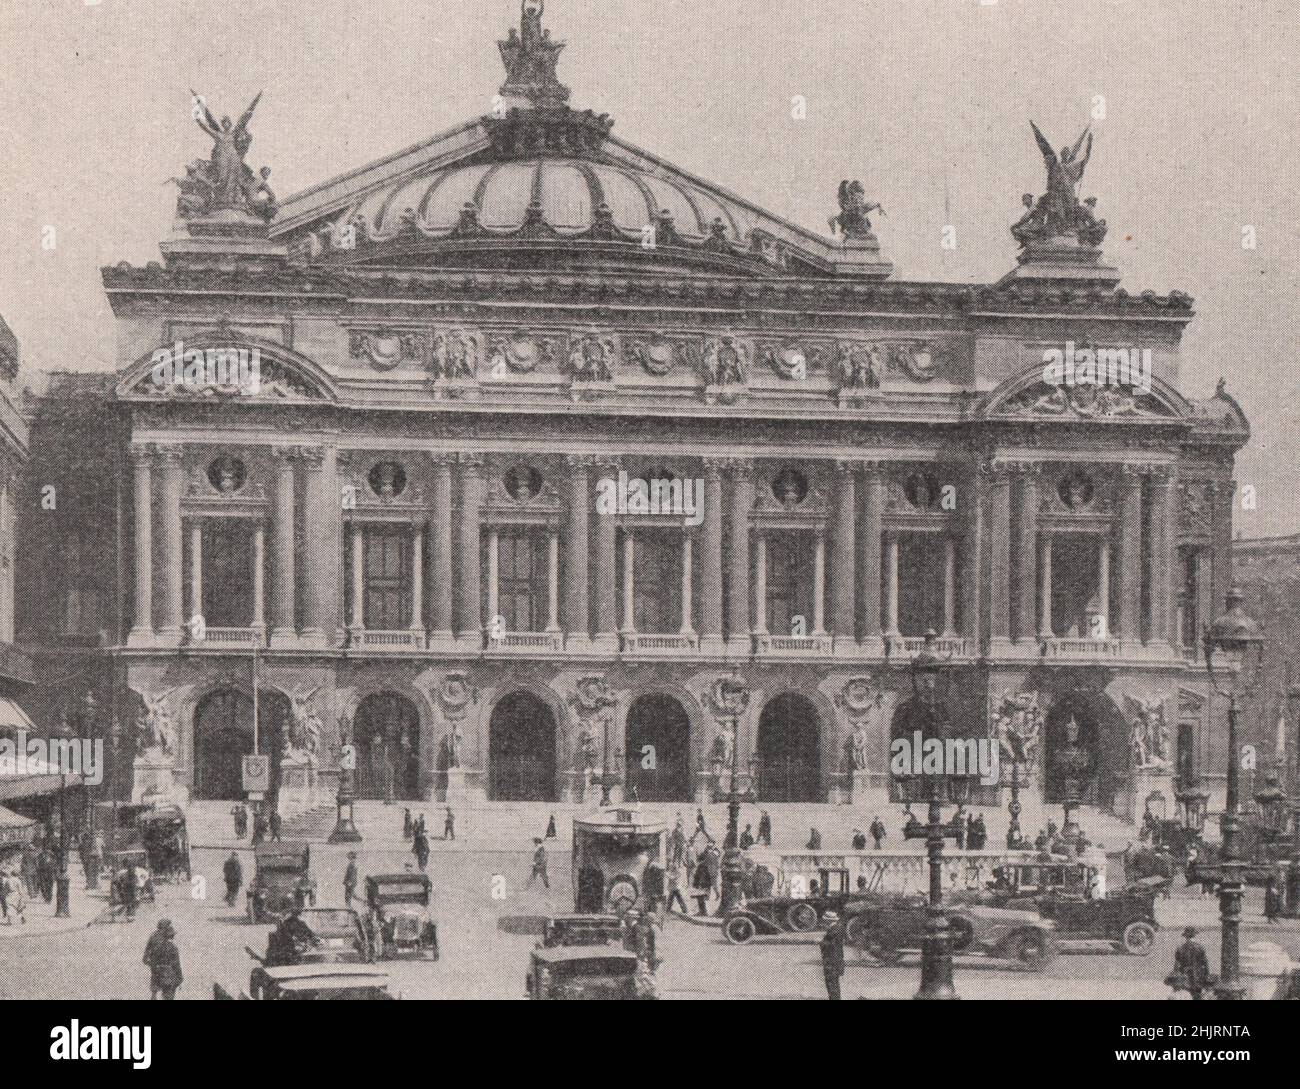 Istituzione parigina alla moda: Il famoso teatro dell'opera. Parigi (1923) Foto Stock